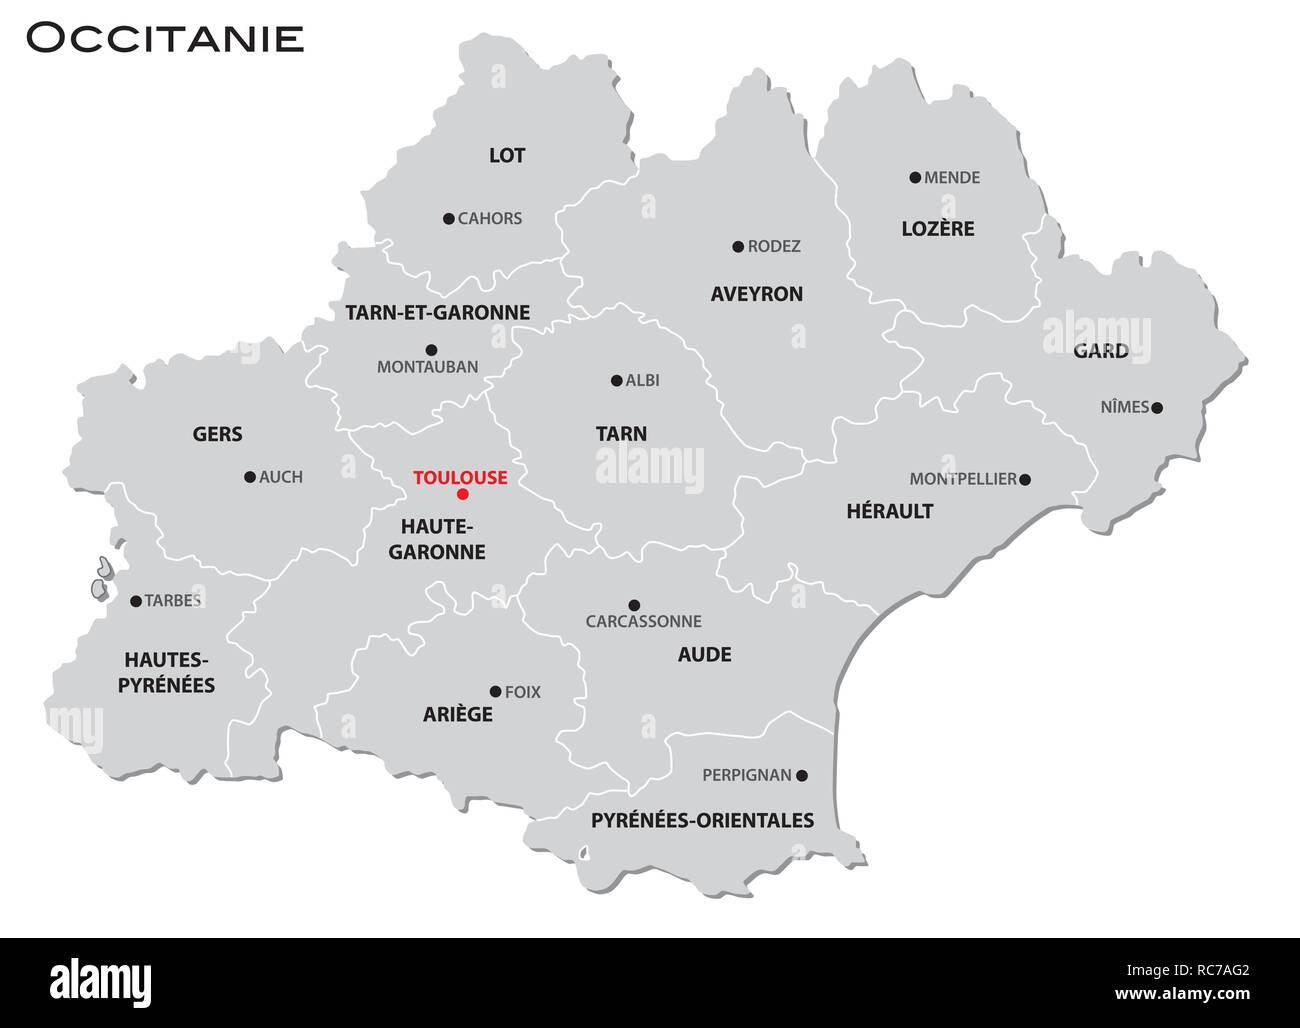 Einfachen grauen administrative Karte der neuen französischen Region Occitanie Stock Vektor